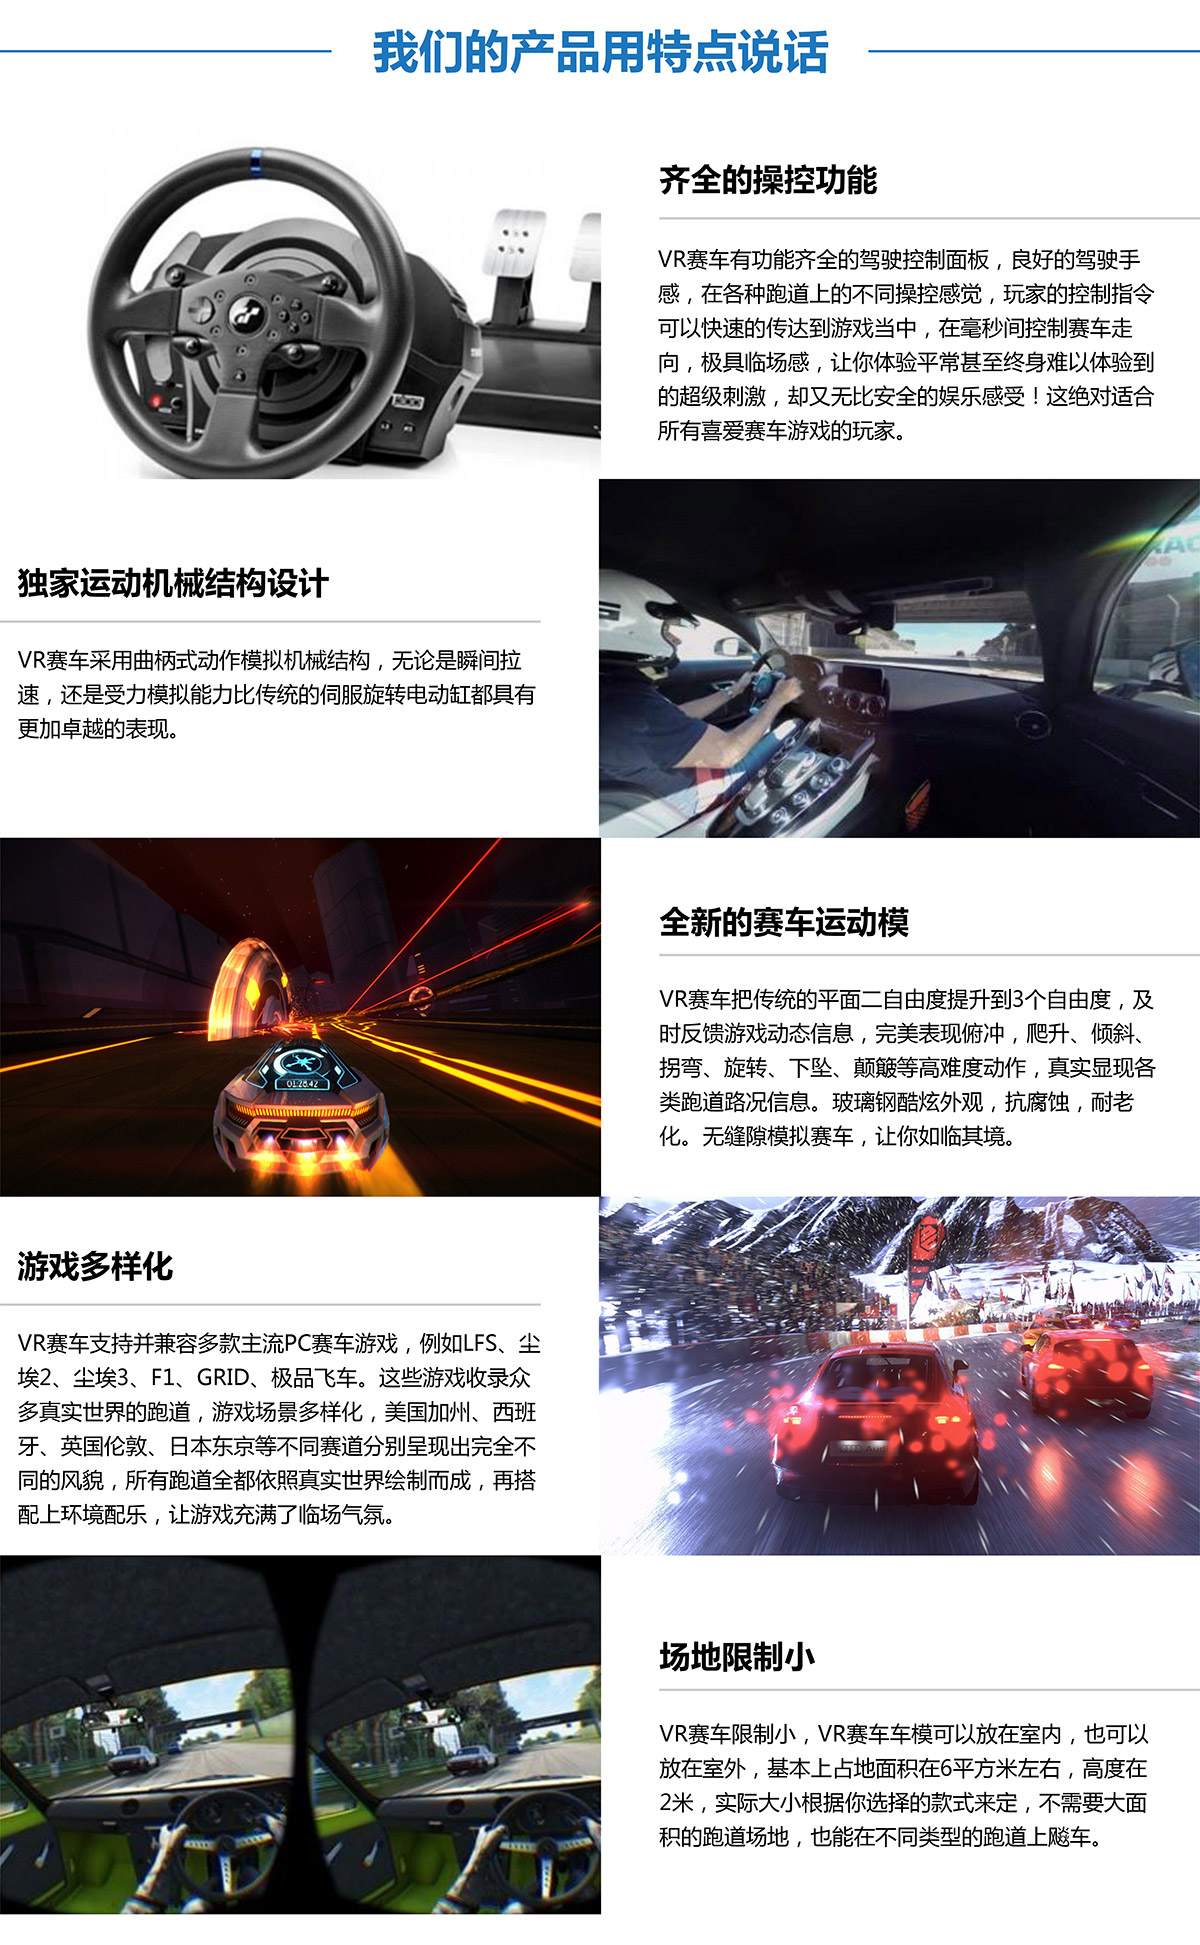 球幕影院虚拟VR赛车产品用特点说话.jpg